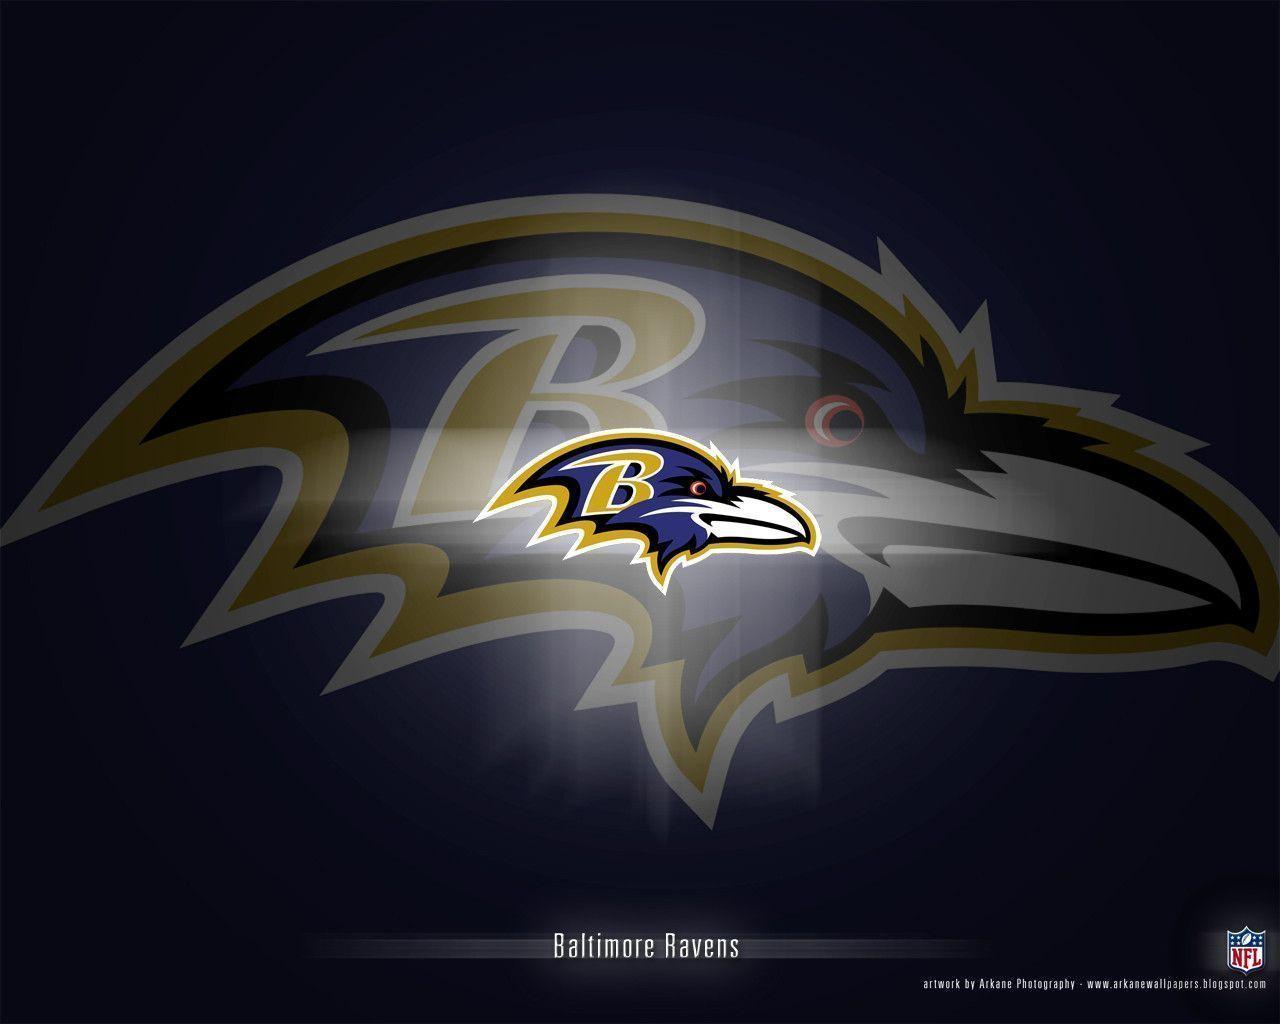 Baltimore Ravens wallpaper HD image. Baltimore Ravens wallpaper